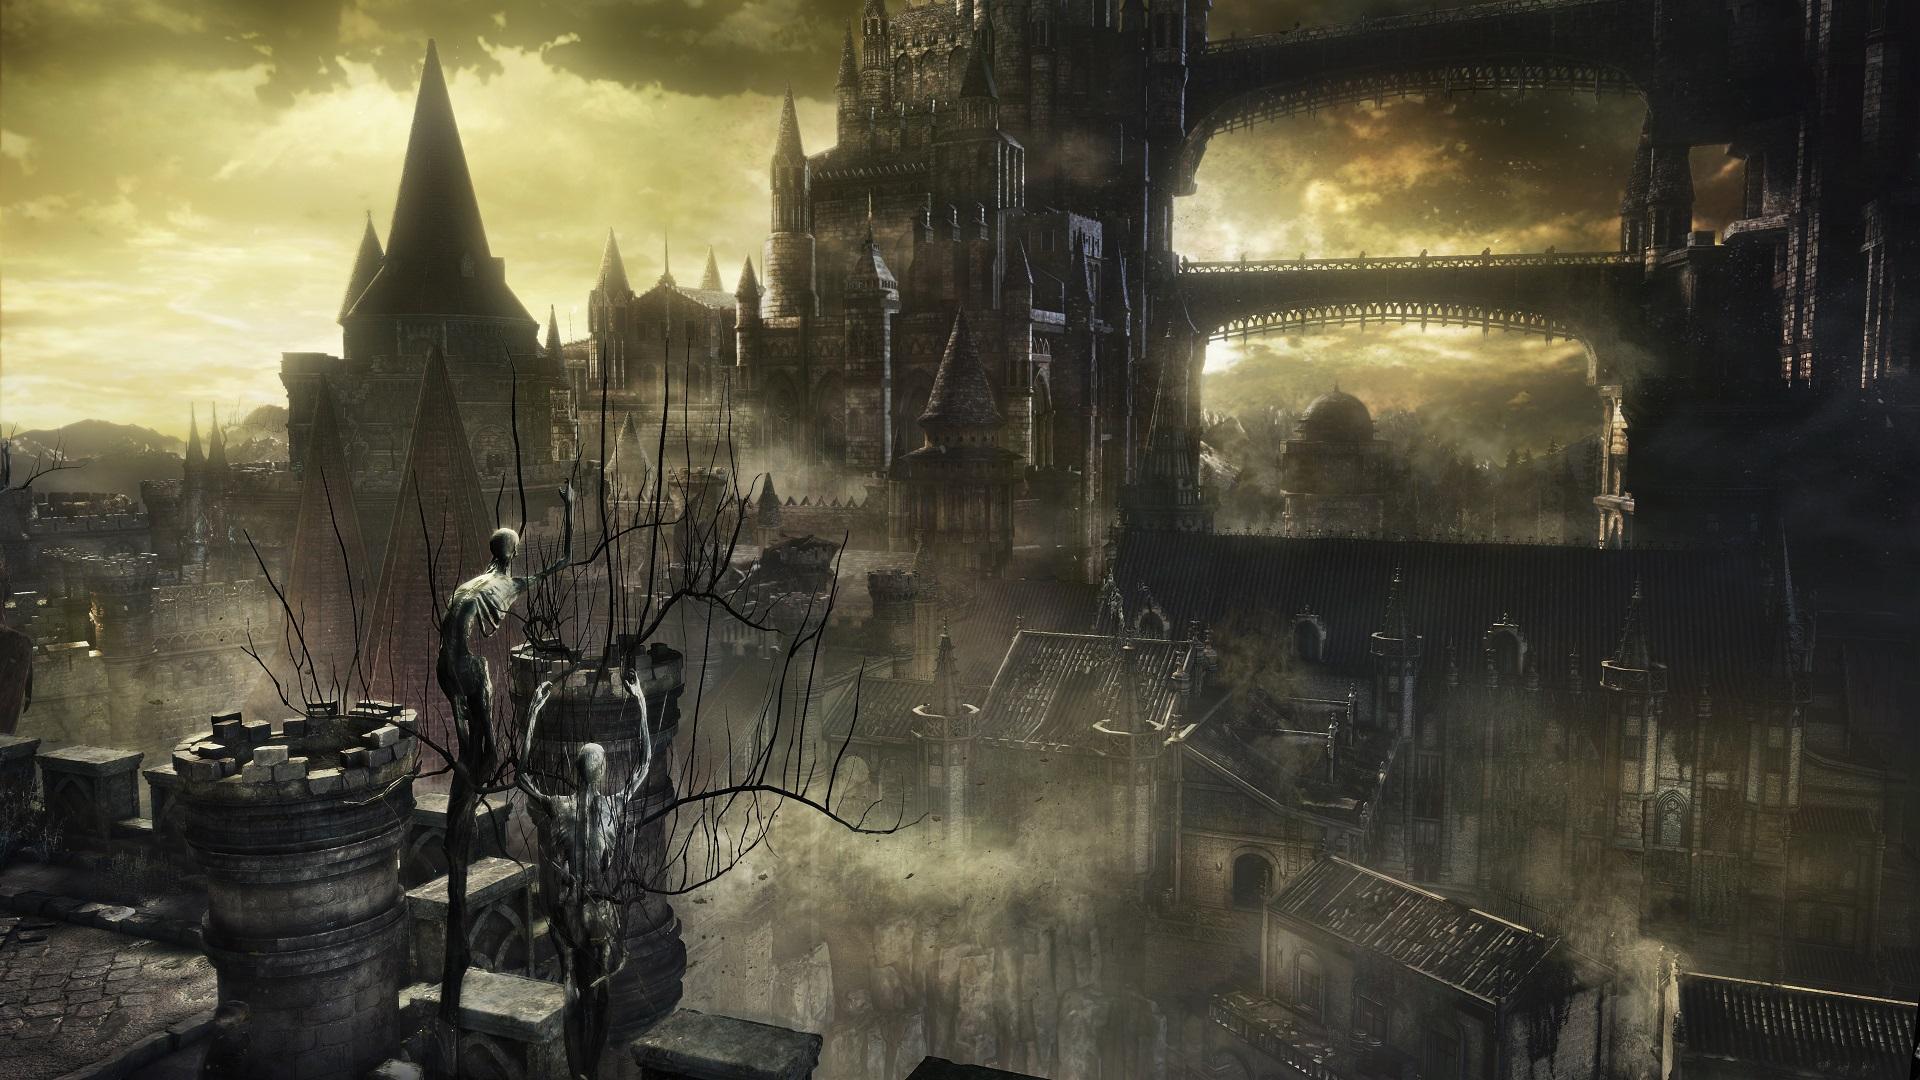 Dark Souls III hé lộ “Bản chất của bóng tối” trong trailer mới – Tin Game